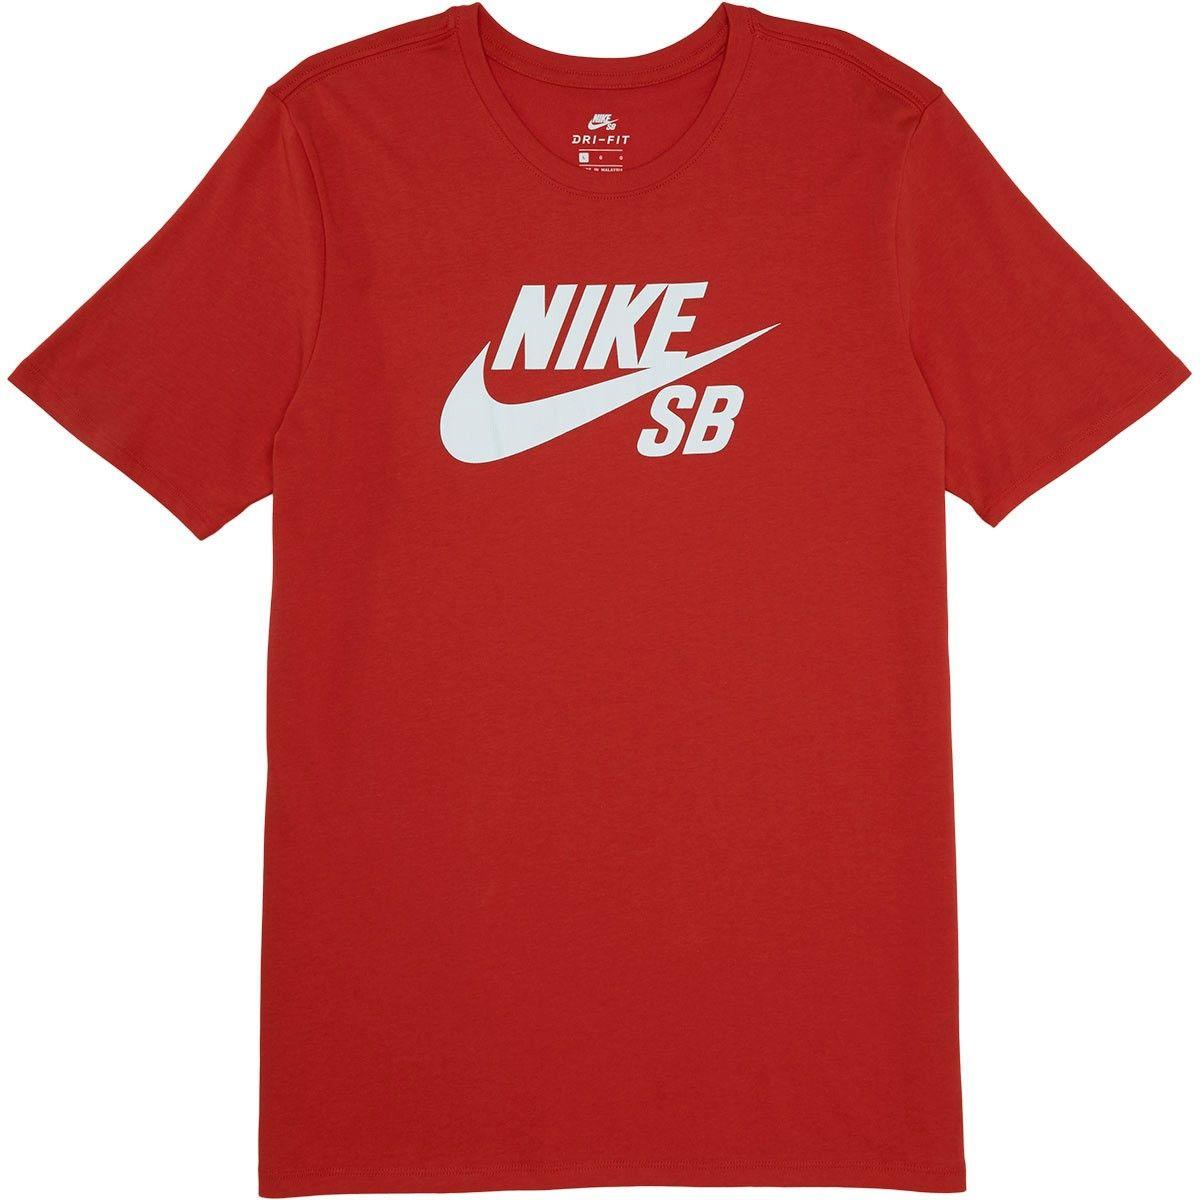 Red Nike SB Logo - LogoDix